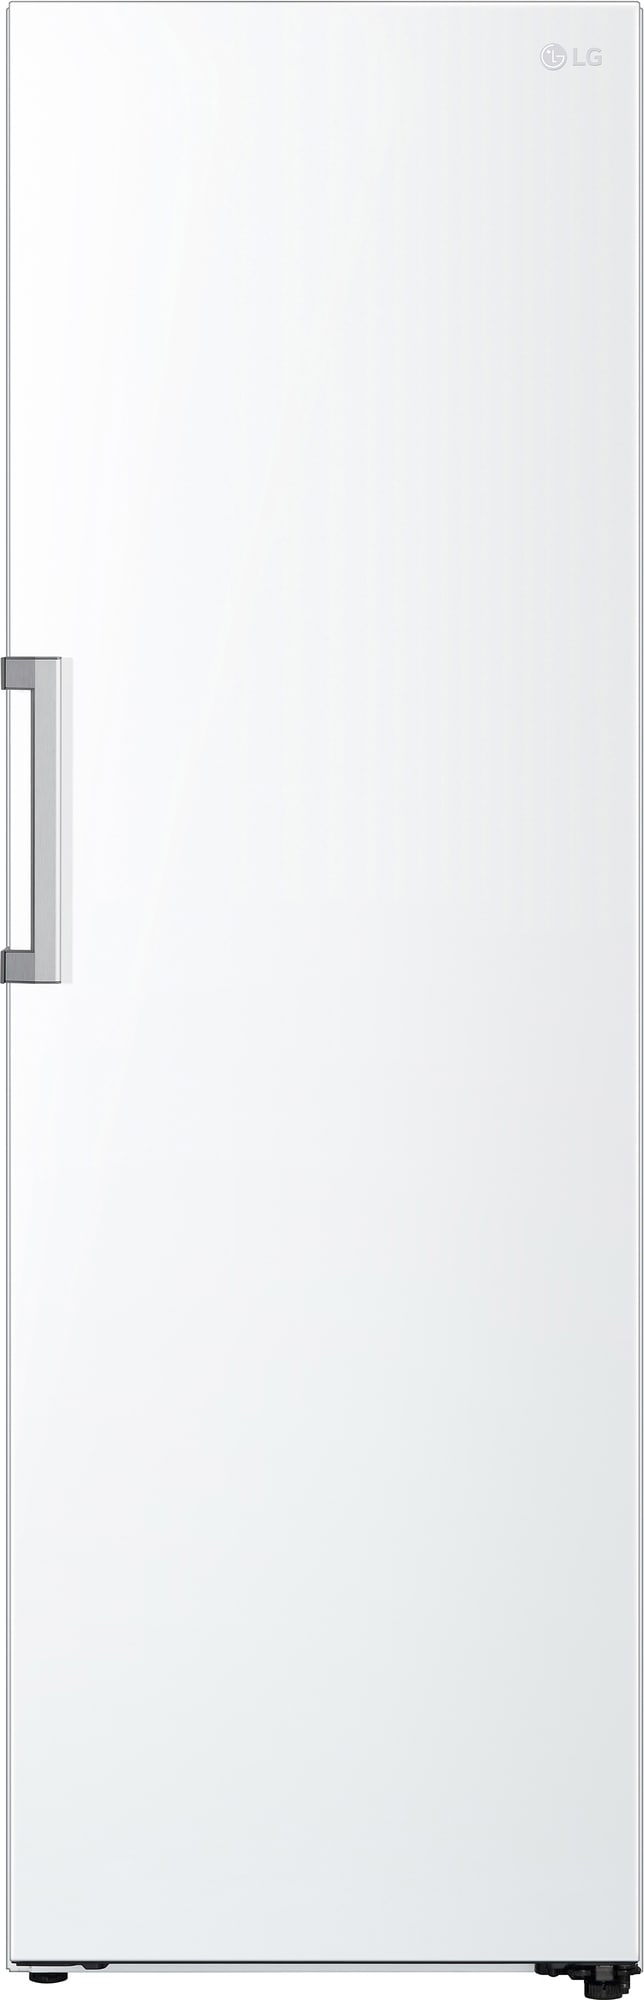 Bedste LG Køleskab i 2023